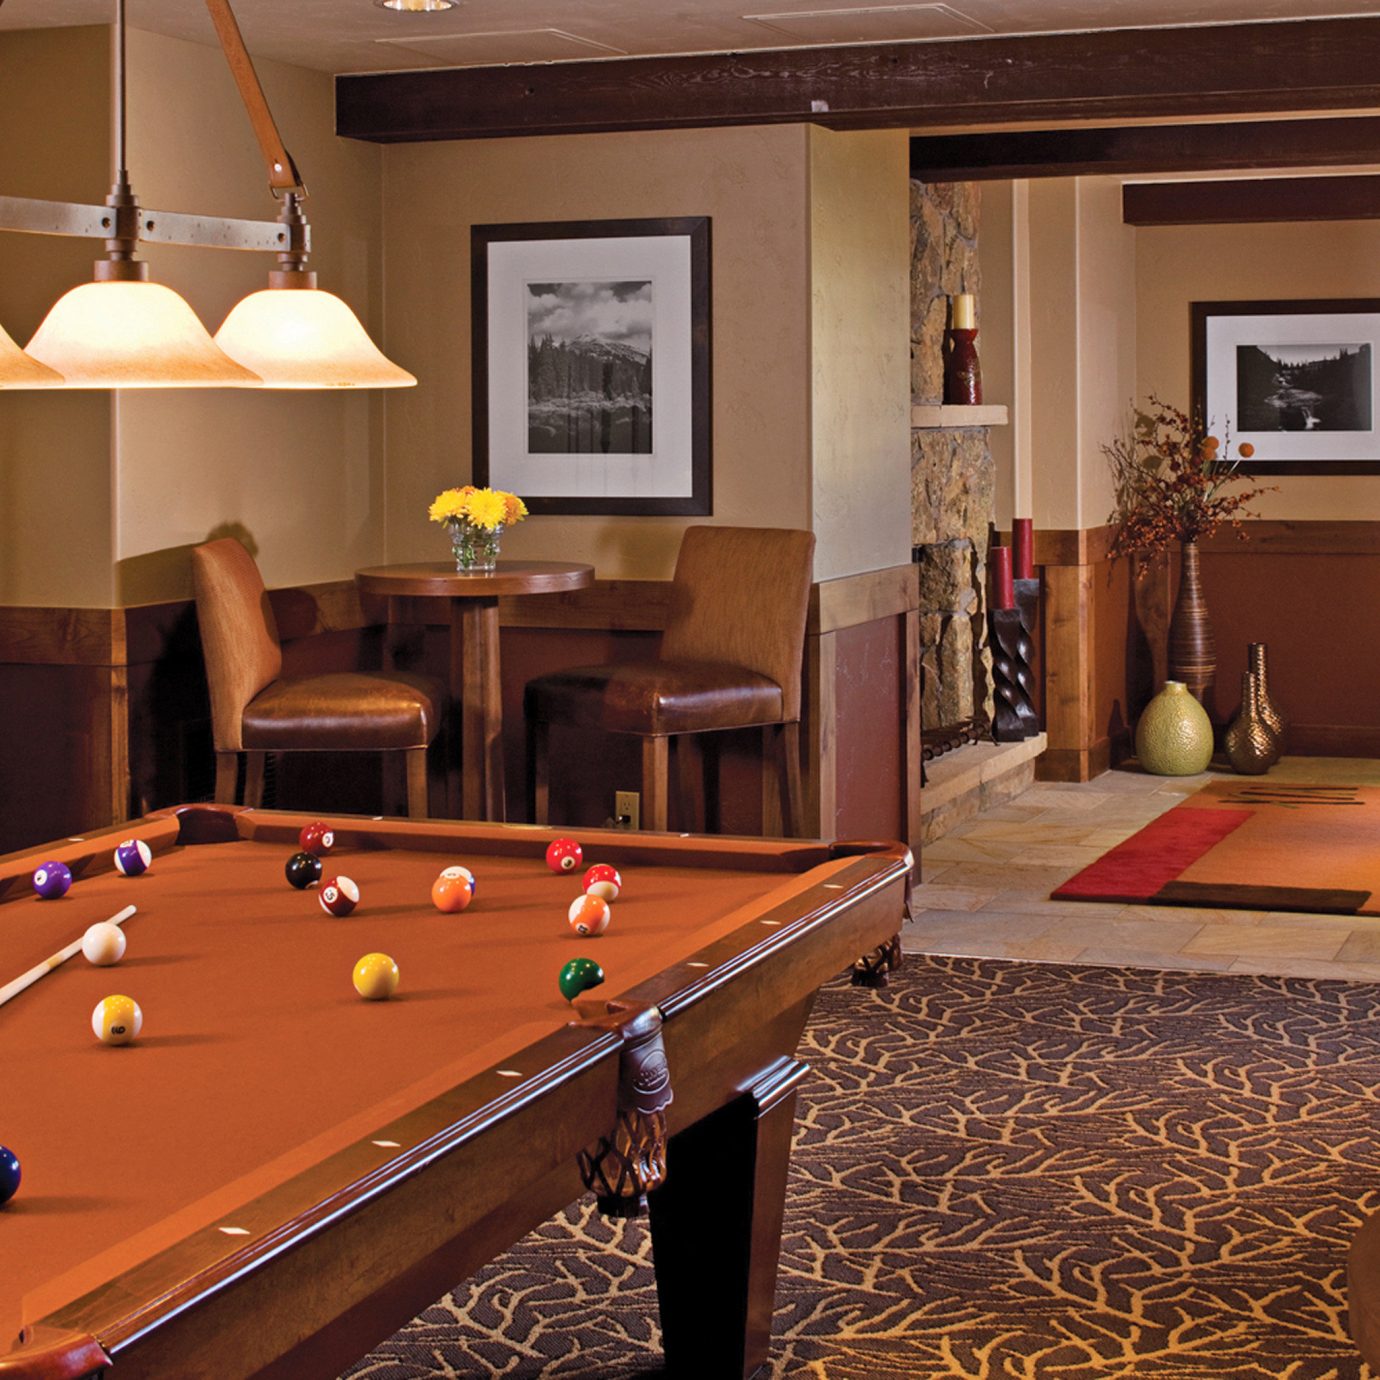 Lodge Lounge Rustic billiard room recreation room pool table poolroom hardwood billiard table living room indoor games and sports